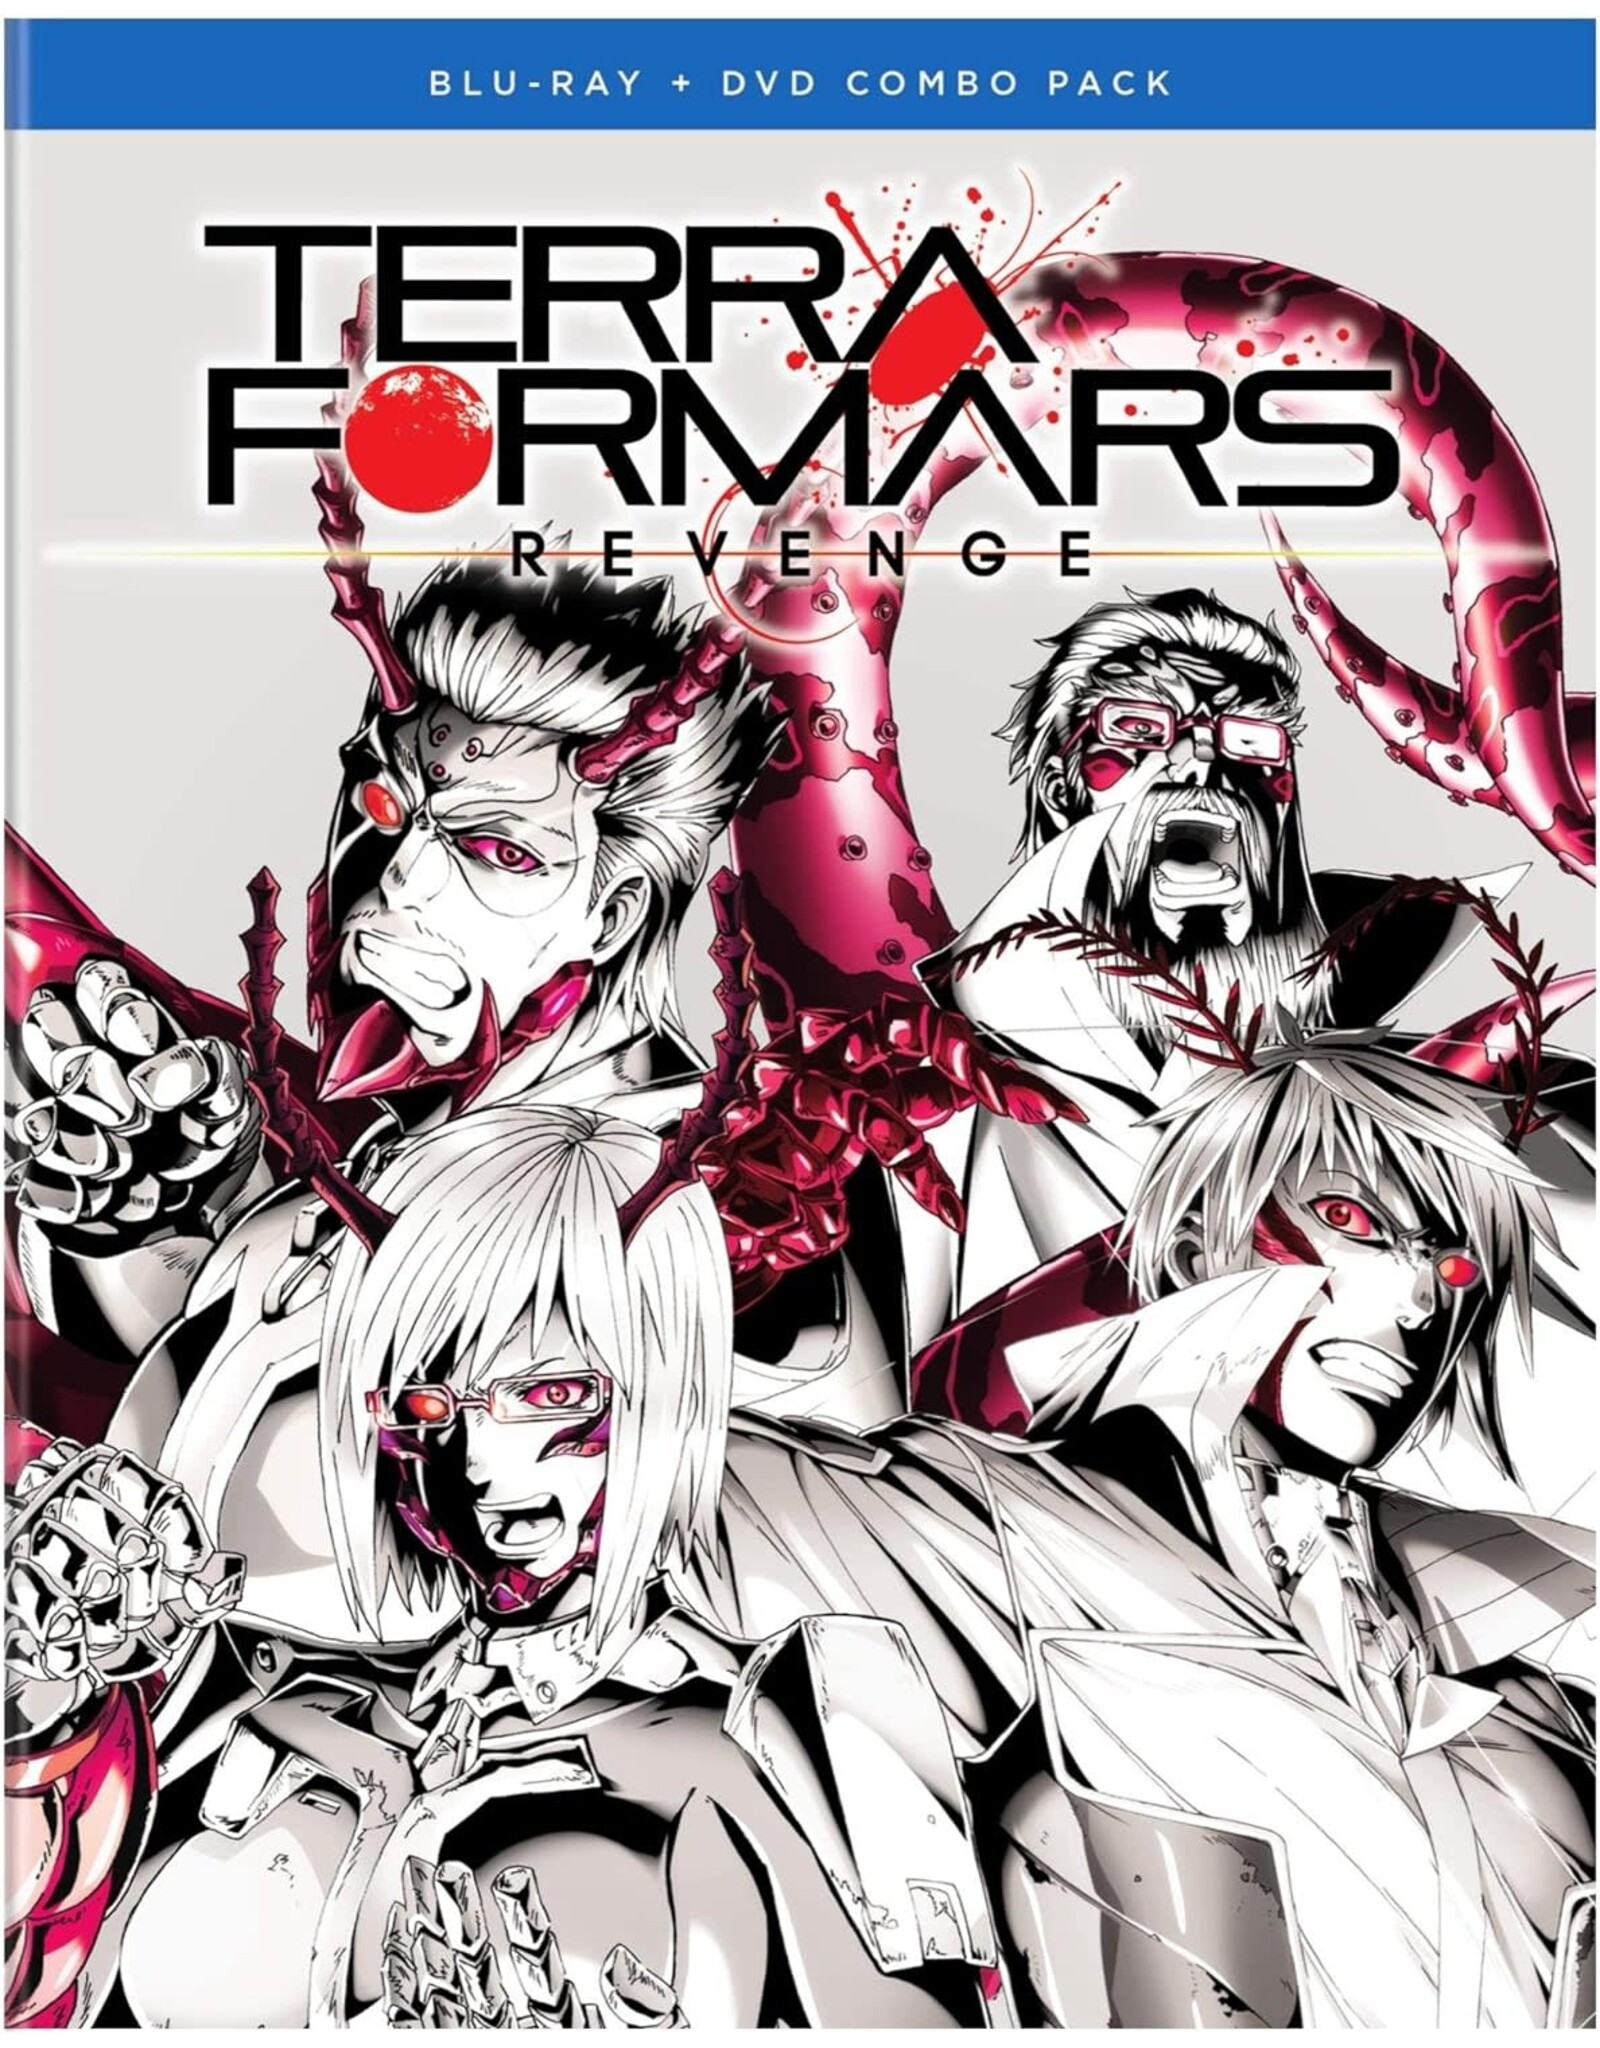 Anime & Animation Terra Formars Revenge Complete Season 2 Set (Brand New)